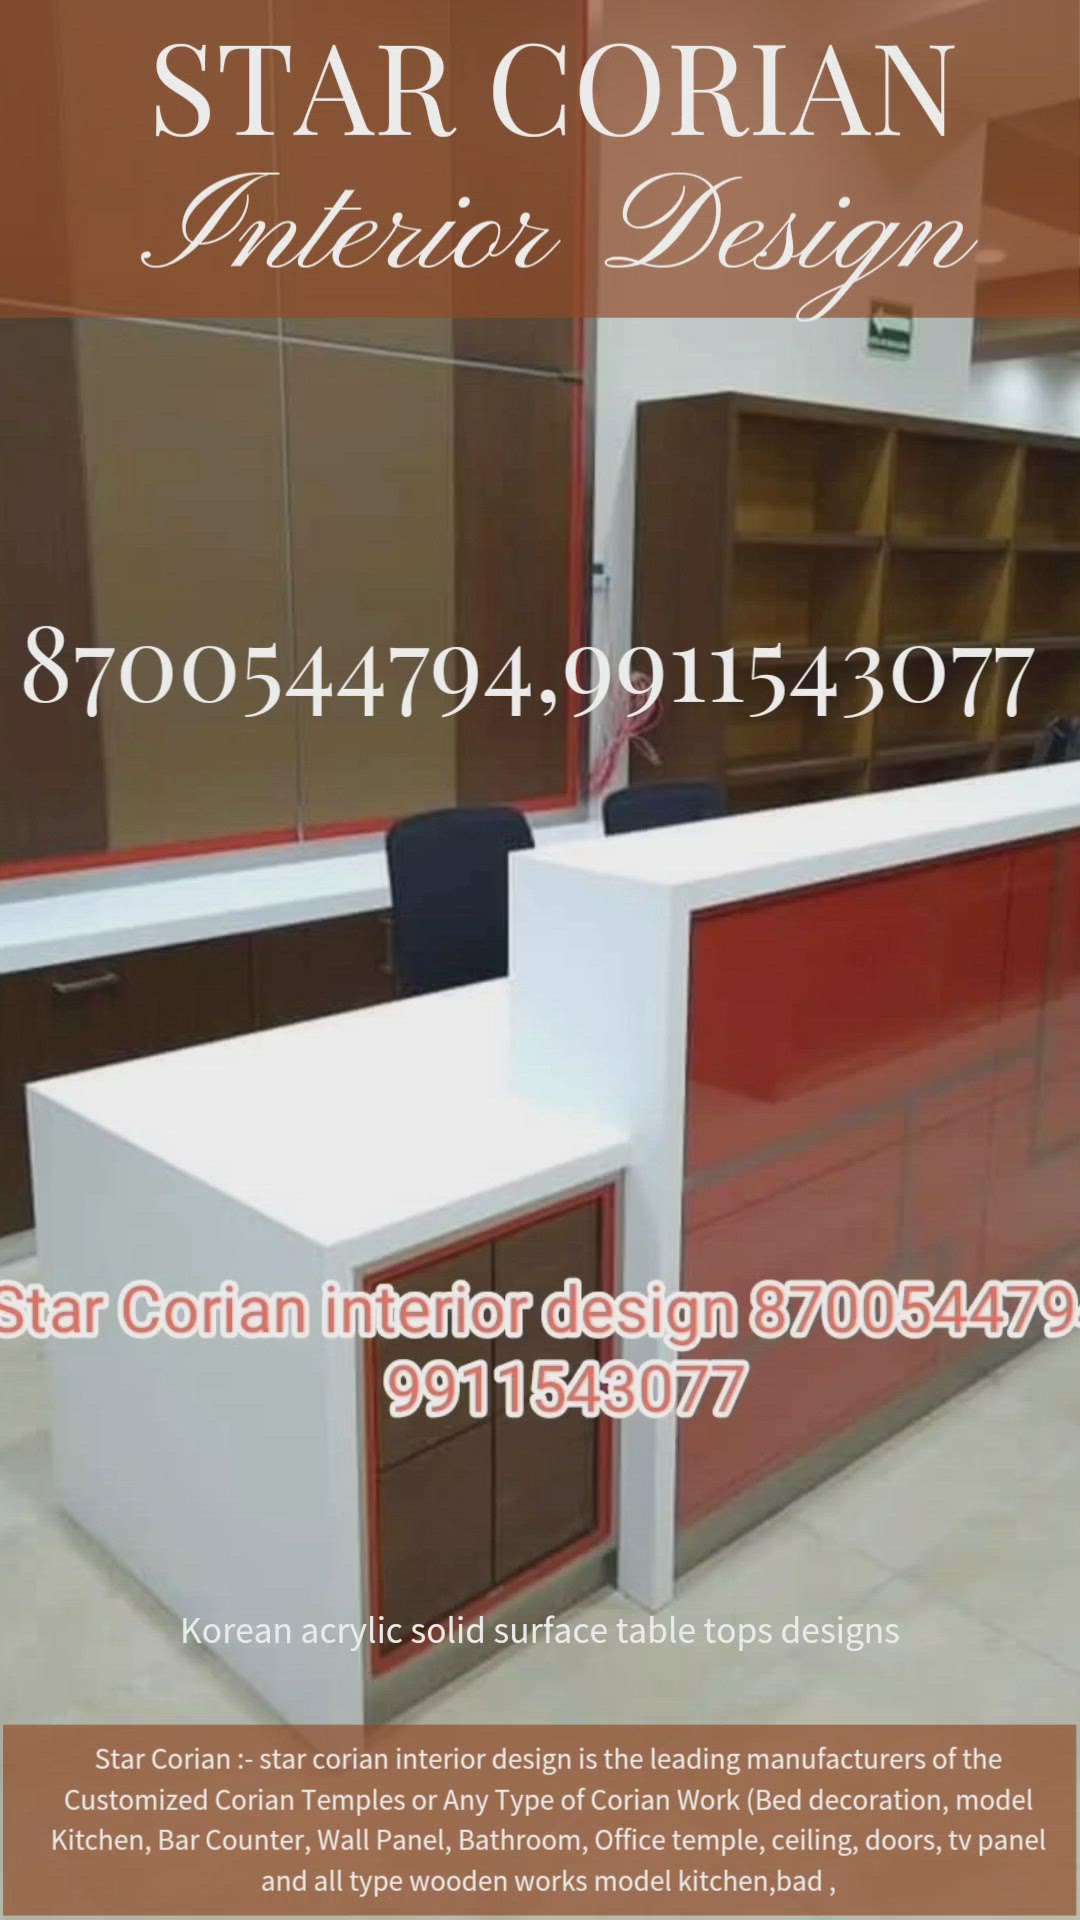 star Corian interior design Korean table top design
8700544794,9911543077